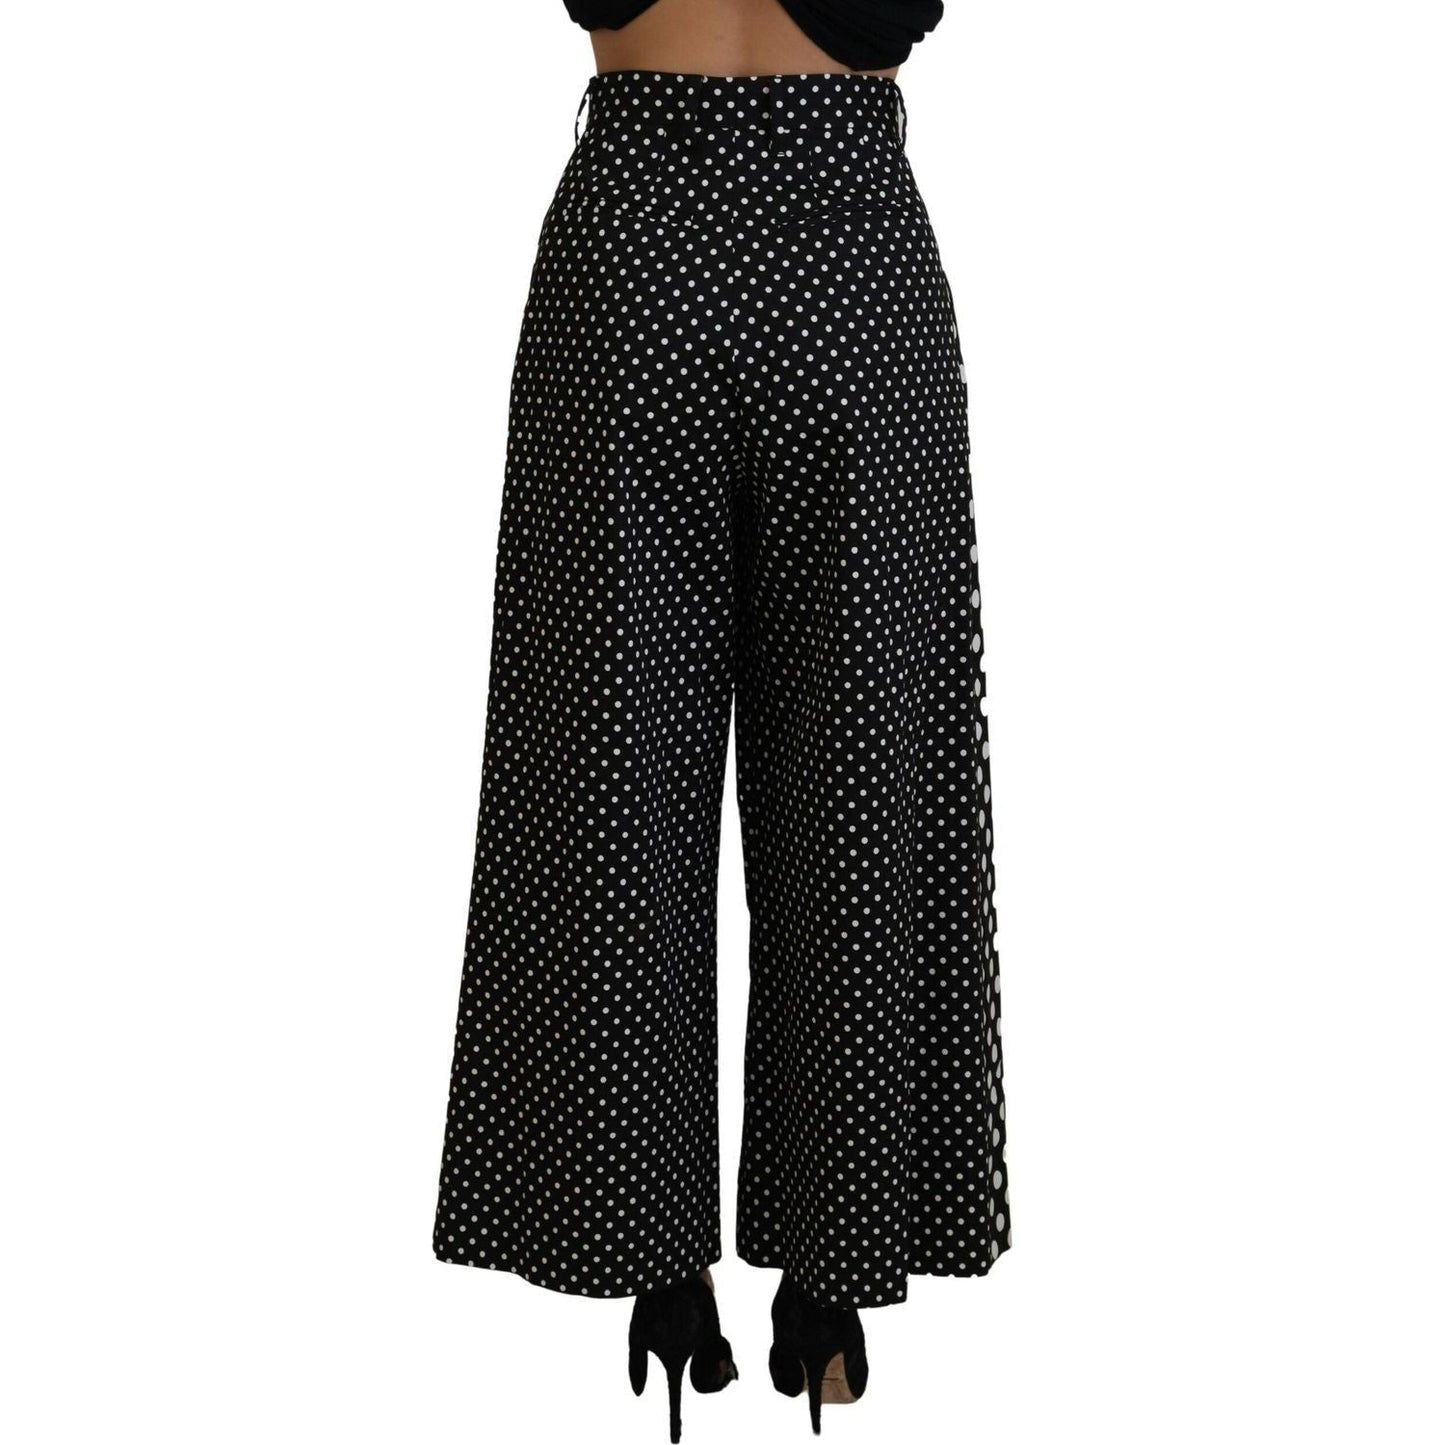 Dolce & Gabbana Elegant High-Waist Polka Dot Pants multicolor-polka-dots-high-waist-pants